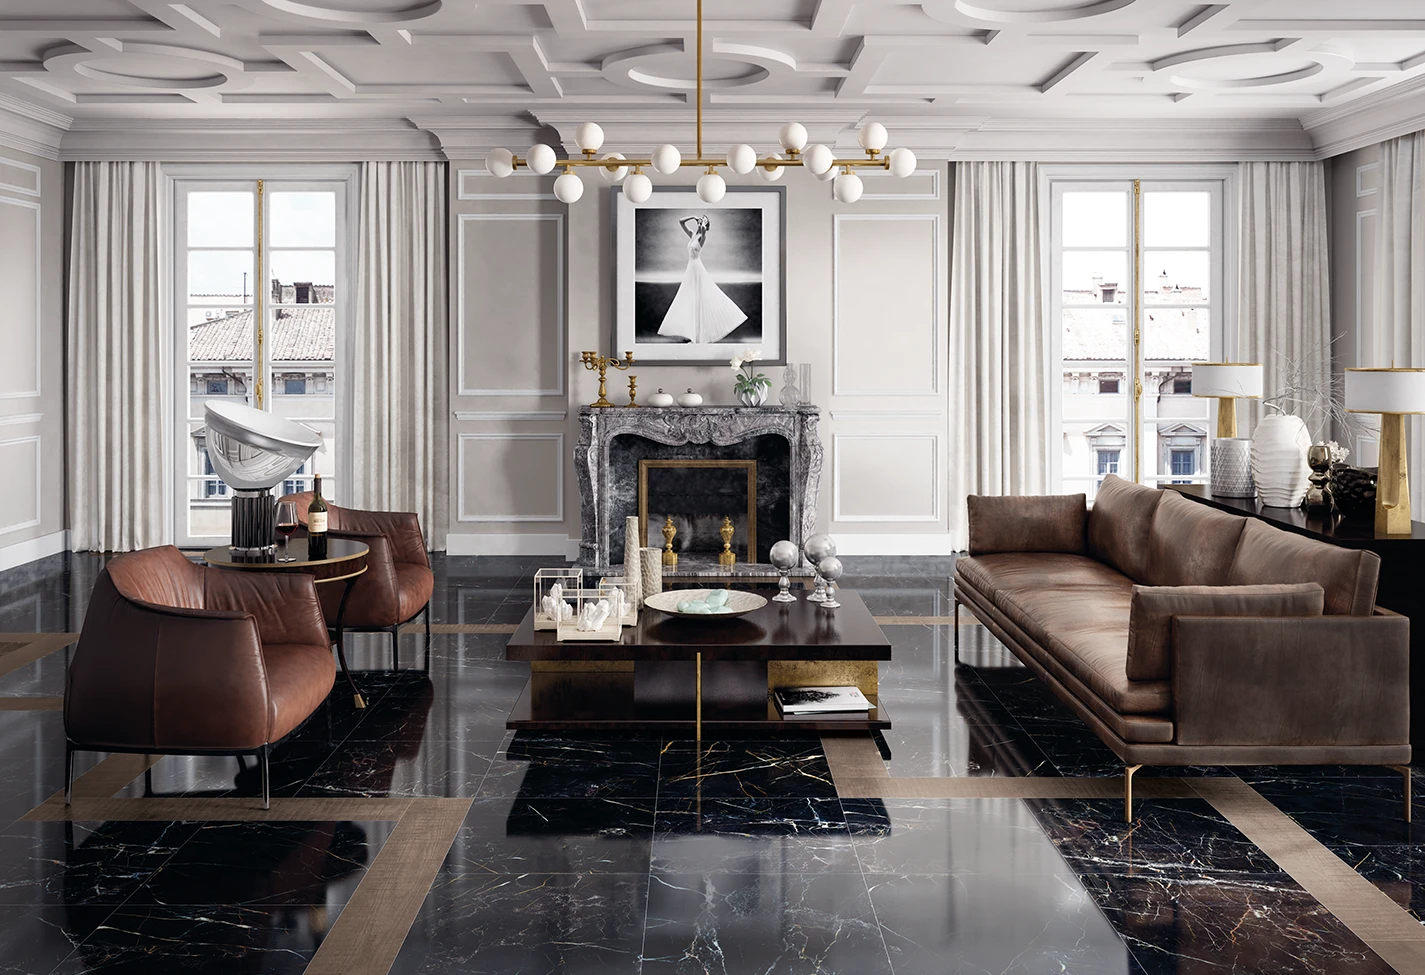 Elegante salotto con pavimenti in marmo effetto Elements Lux colore Port Laurent, camino antico e arredi di design in pelle marrone.